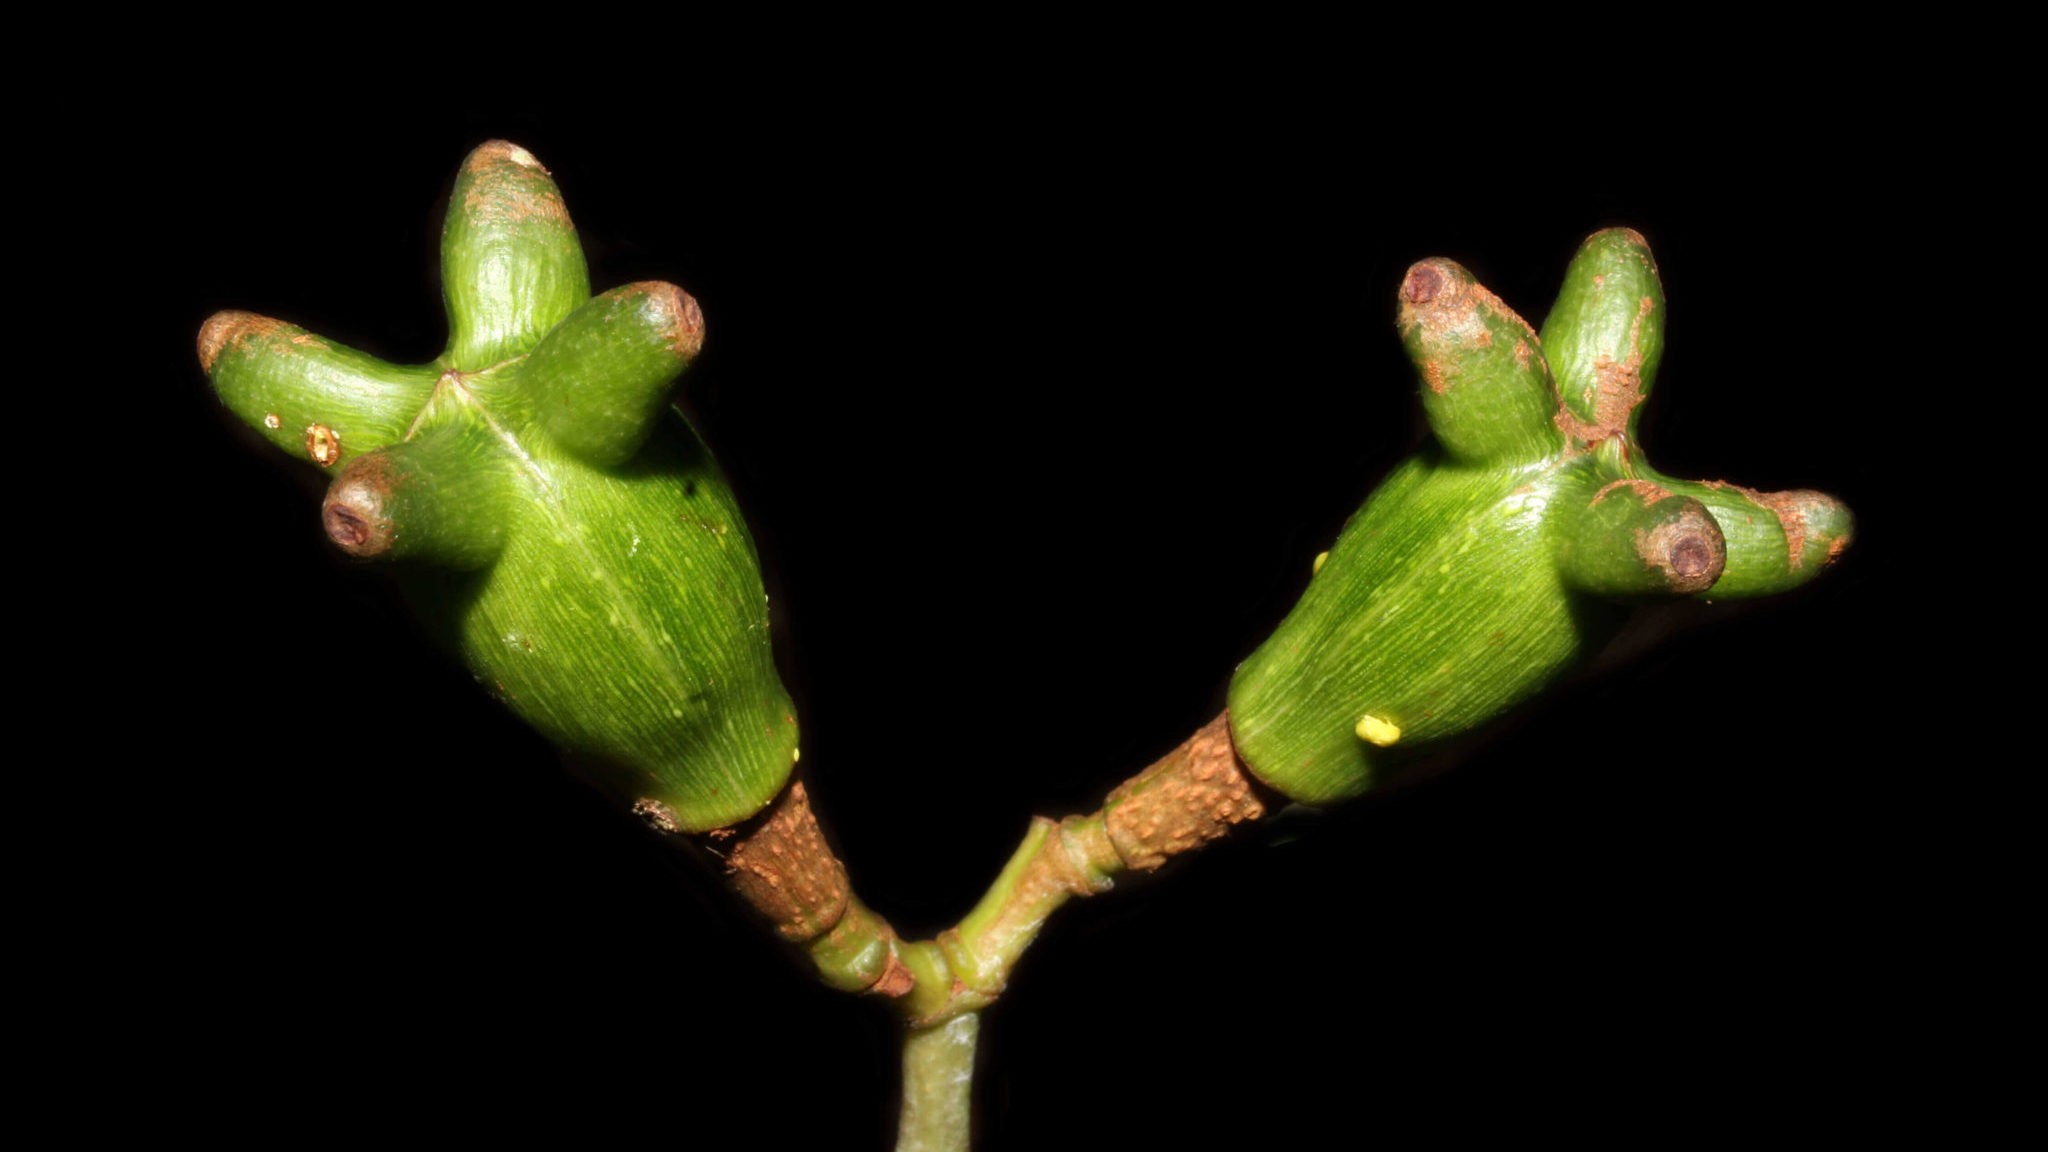 Tovomita cornuta está ameaçada de extinção devido à exploração humana em sua área de ocorrência na Amazônia (Foto: Divulgação)